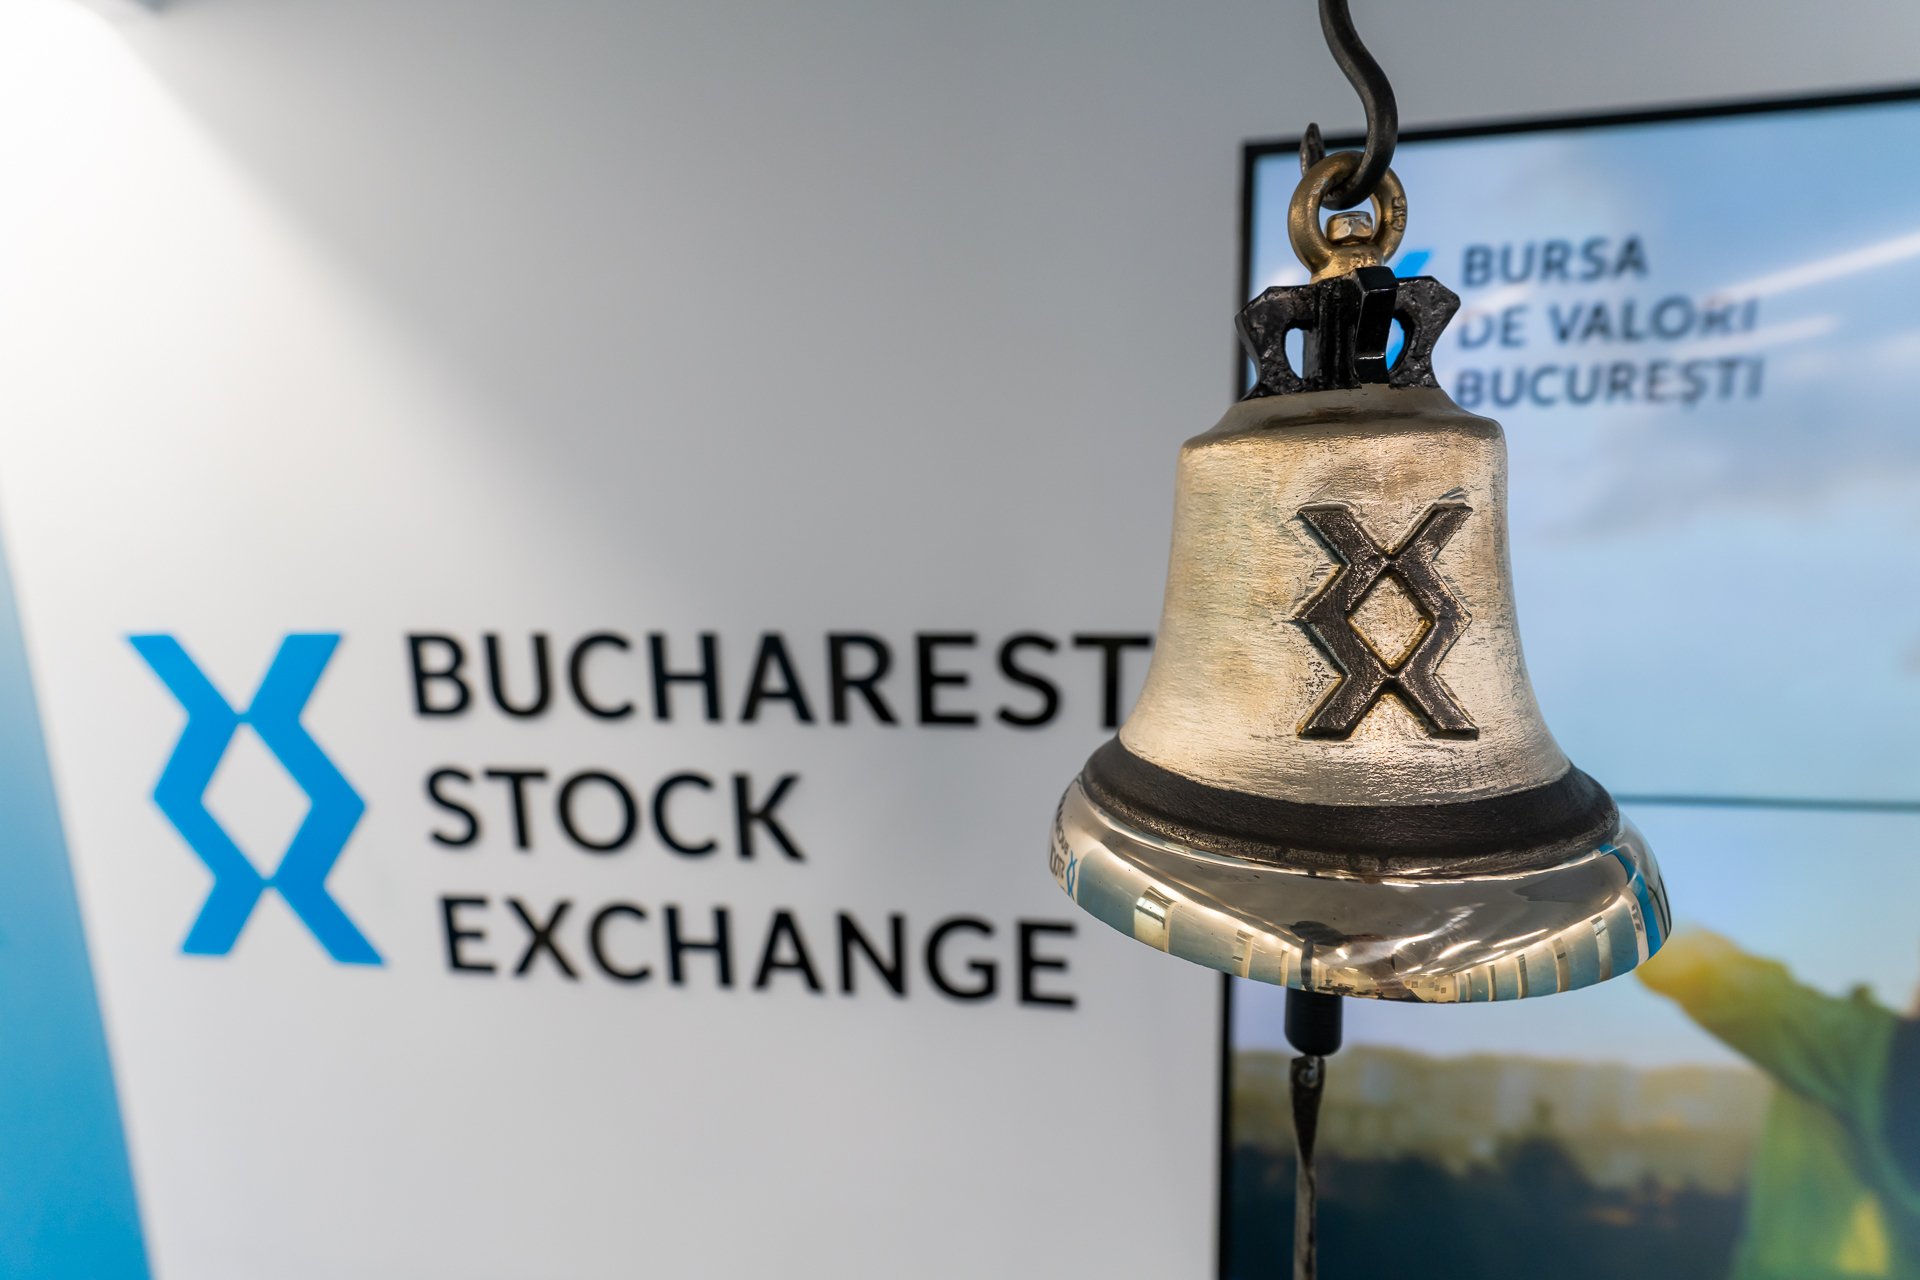  Bursa de la Bucureşti a câştigat peste 3 miliarde de lei la capitalizare, în această săptămână